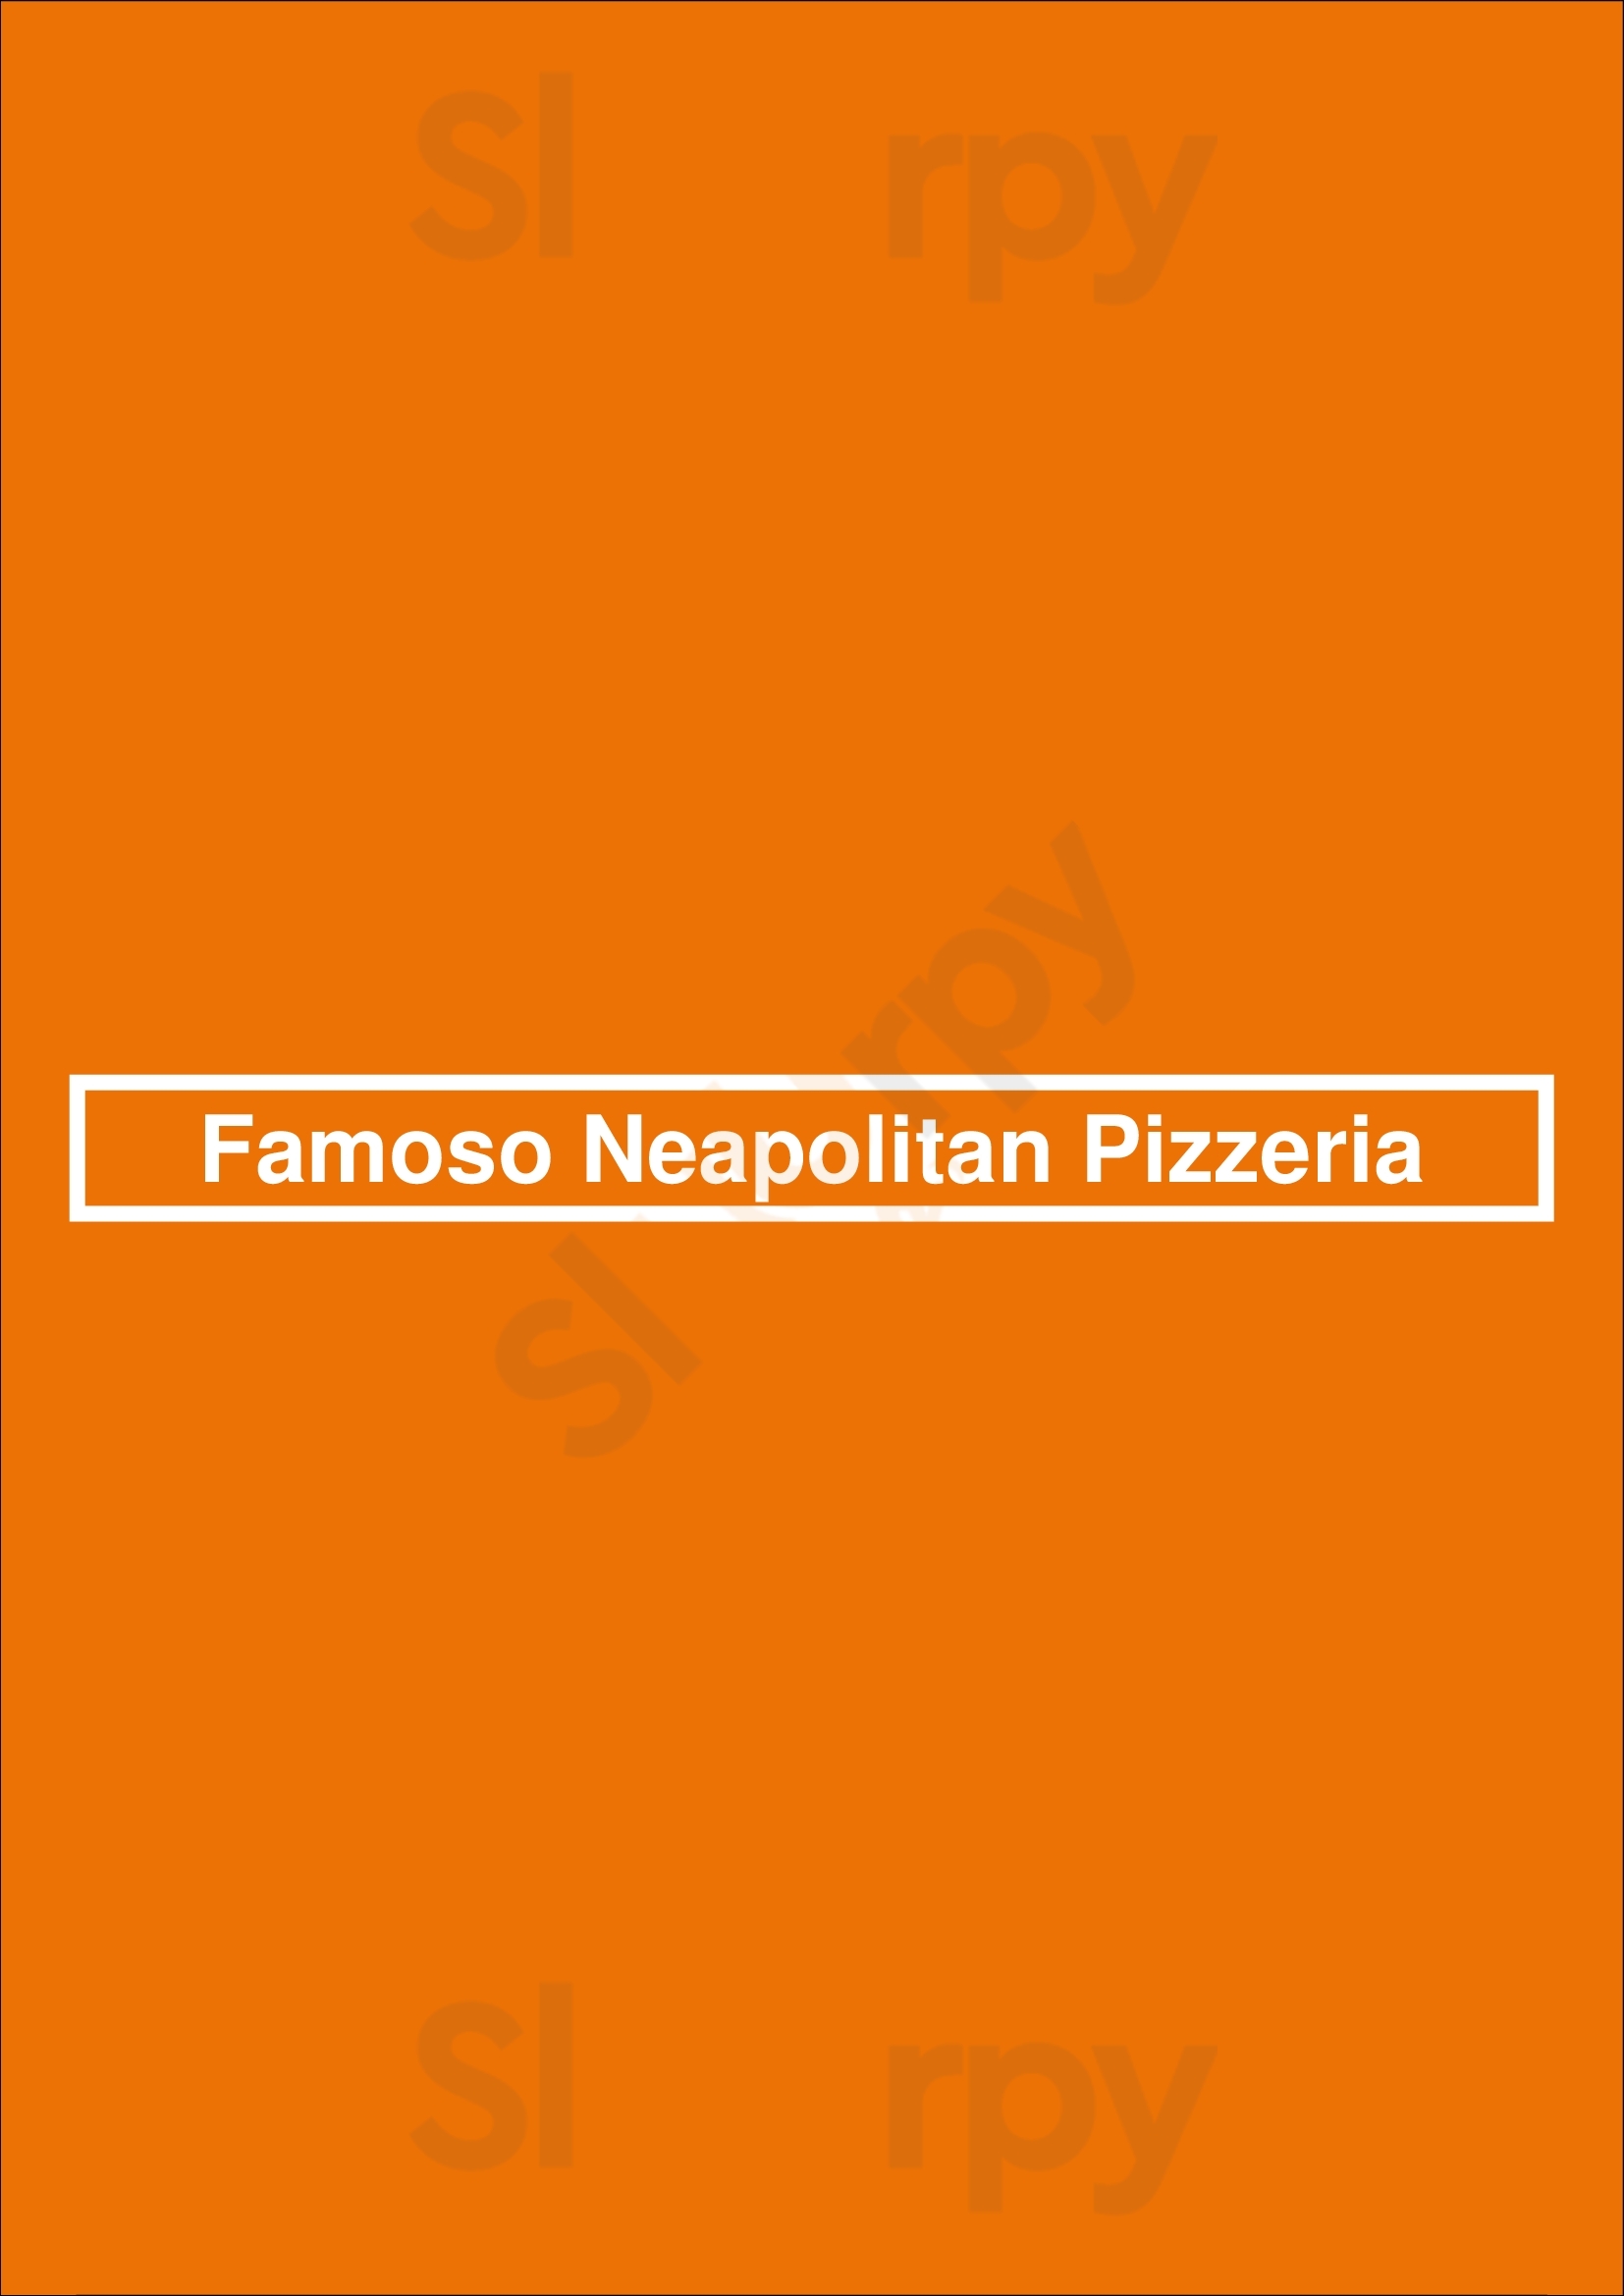 Famoso Neapolitan Pizzeria Abbotsford Menu - 1